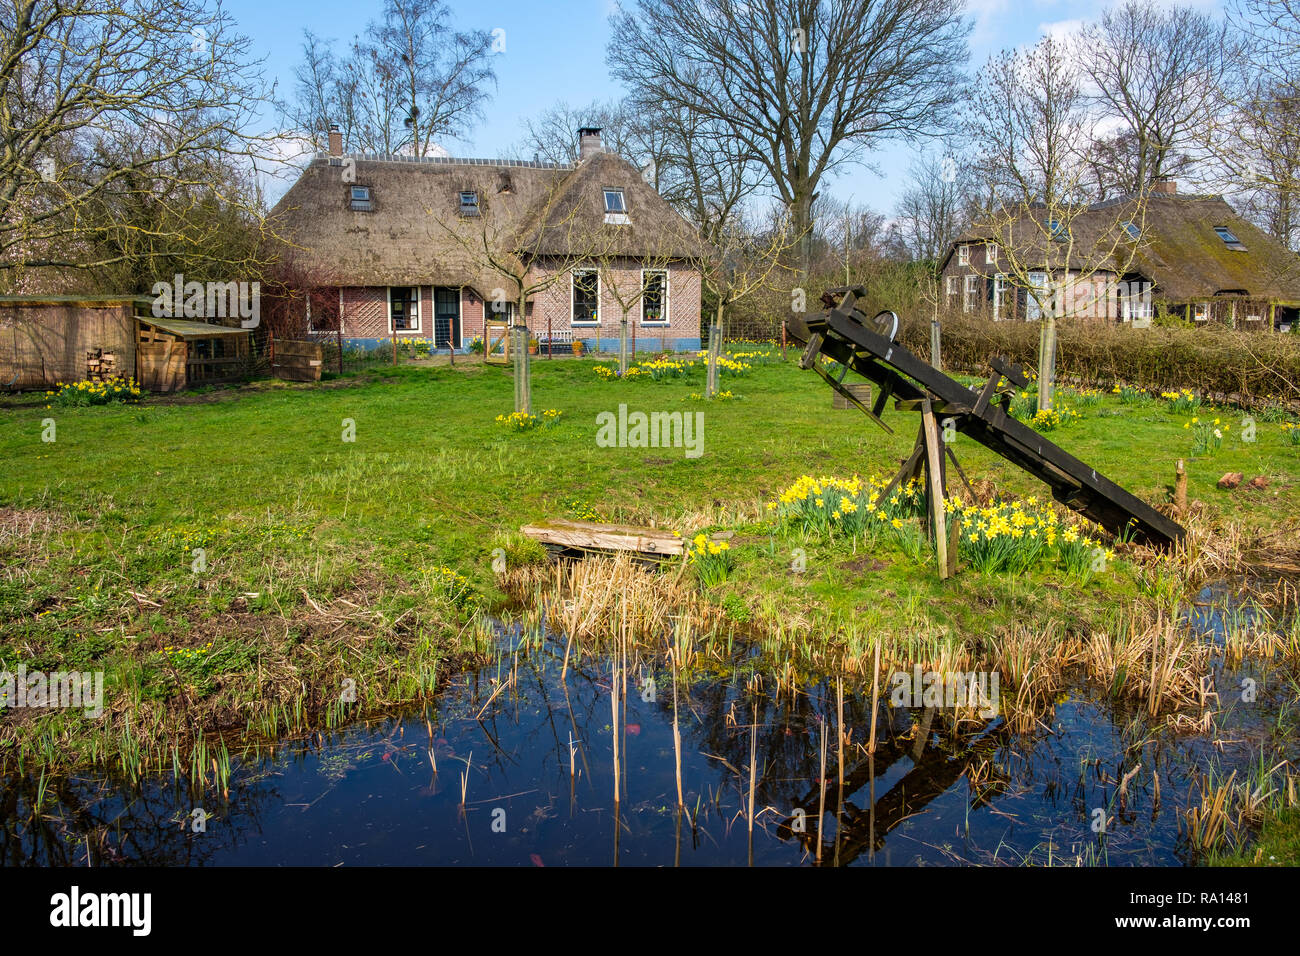 A comienzos de la primavera ver en Giethoorn, Holanda, un tradicional pueblo holandés con canales y rústicas casas de campo con techo de paja. Foto de stock